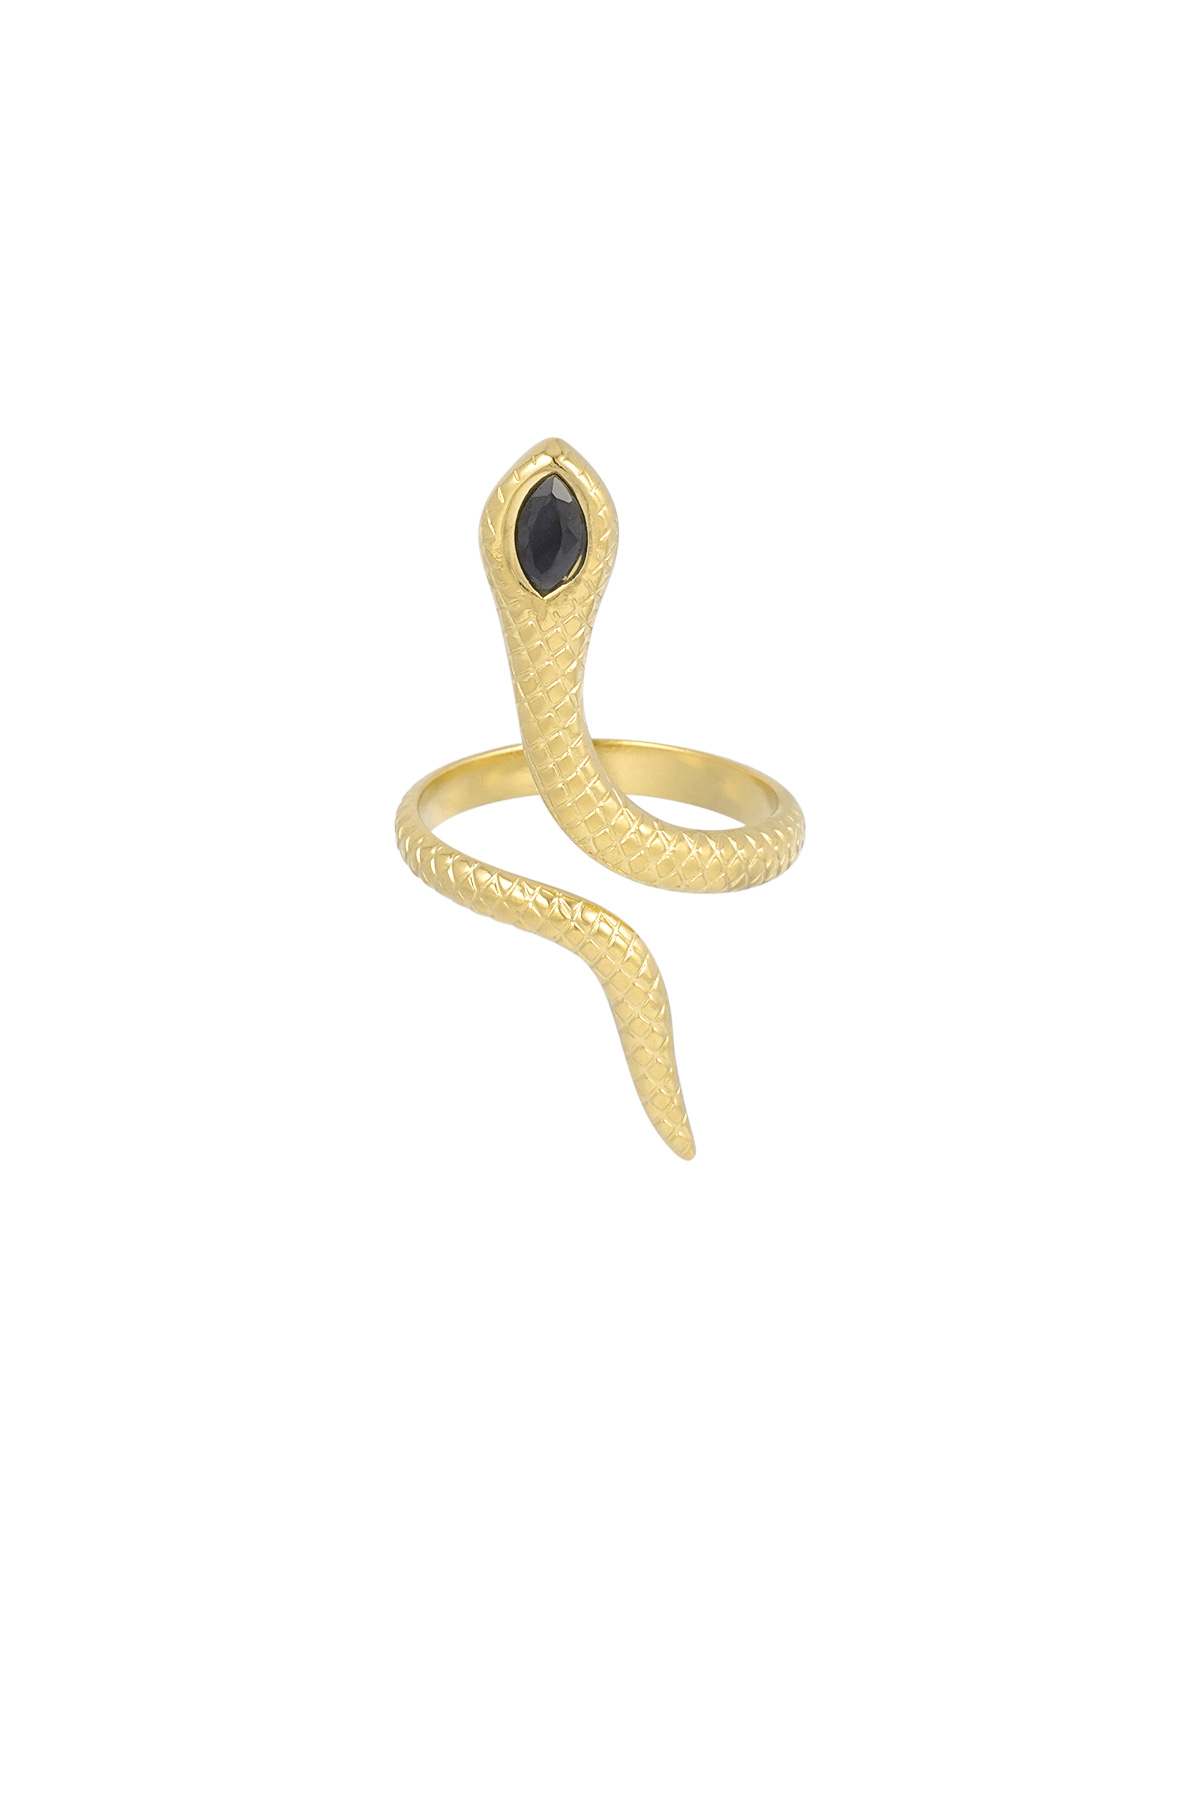 Zwarte slang ring - goud 